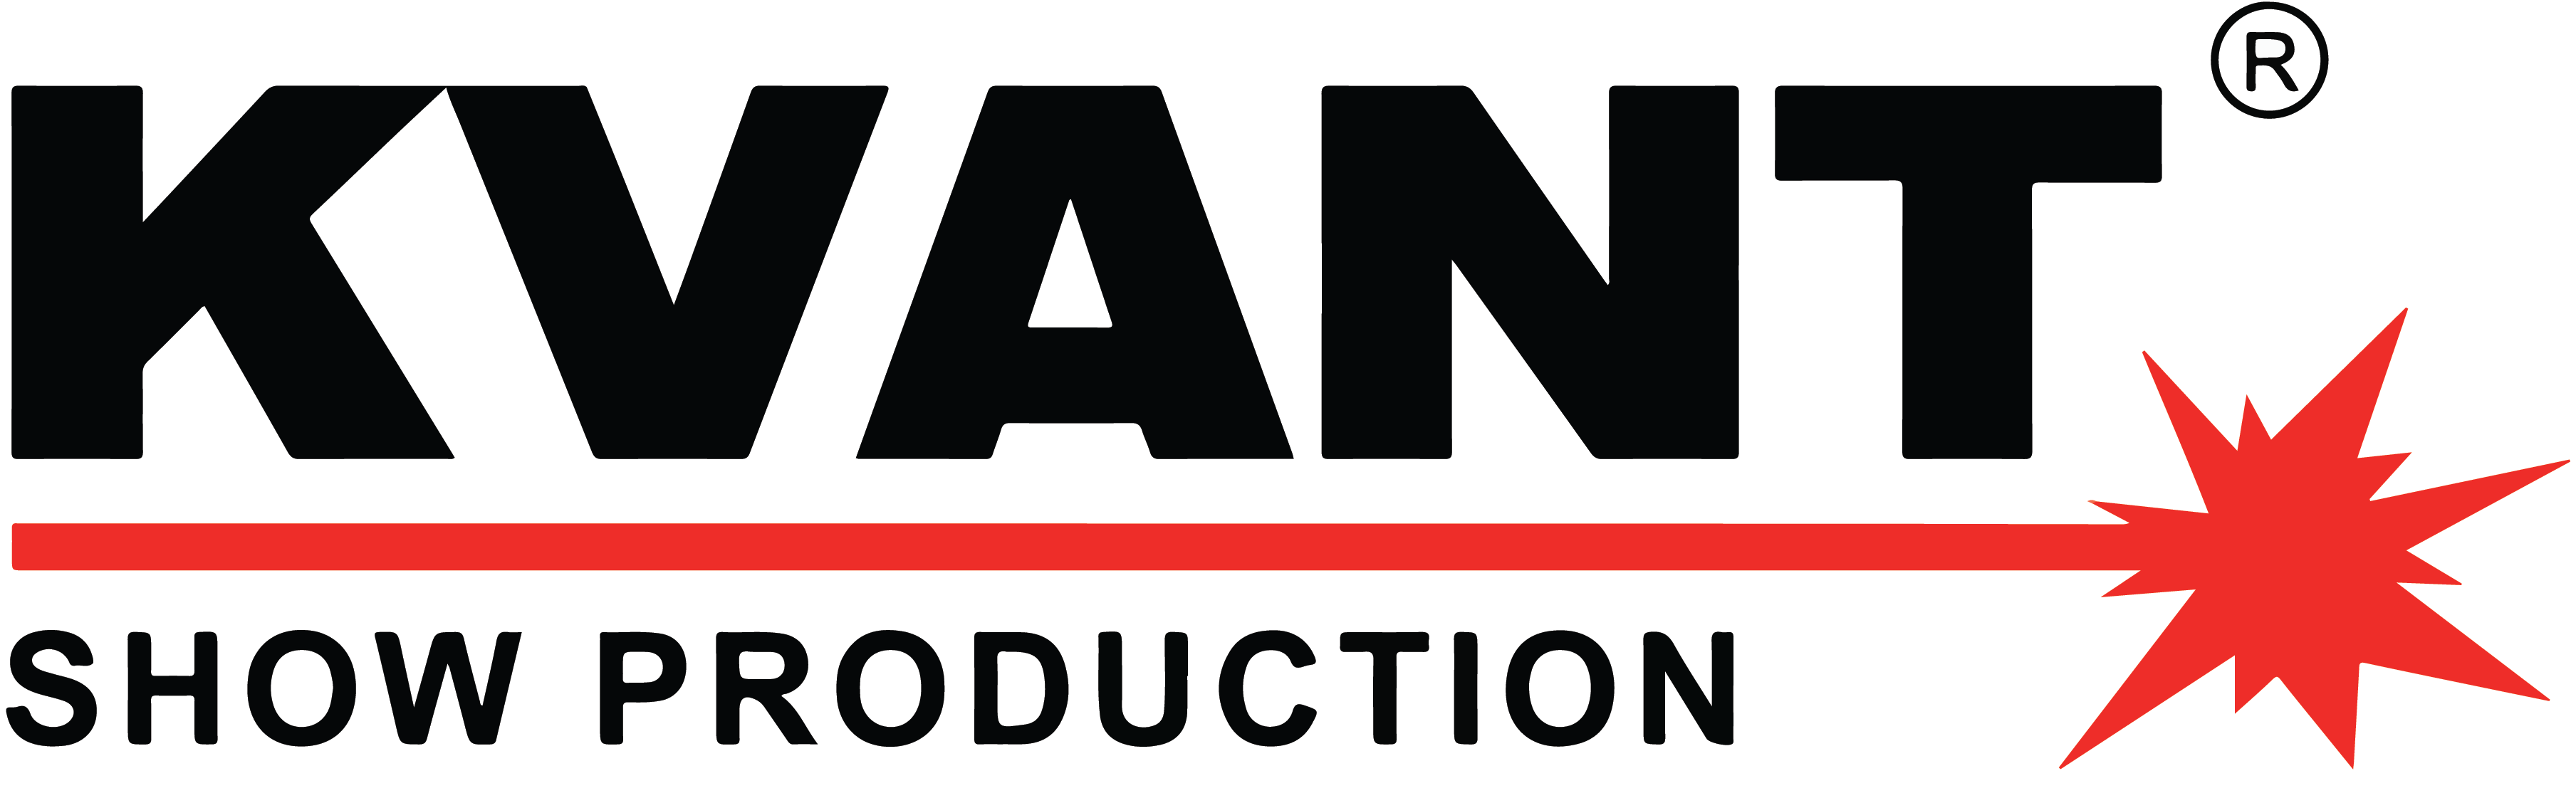 Kvant show production